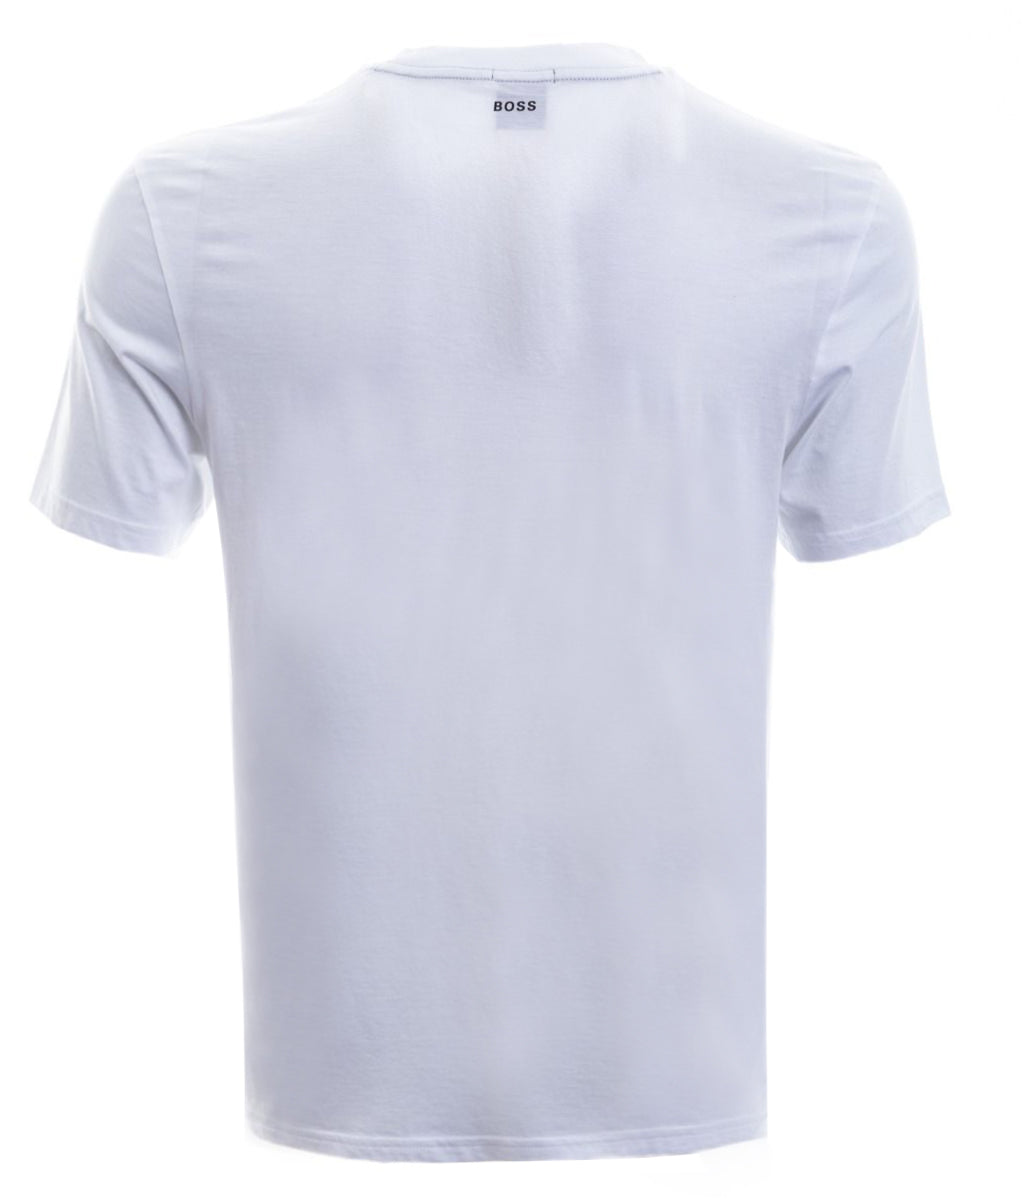 BOSS Tlogo T-Shirt in White Back